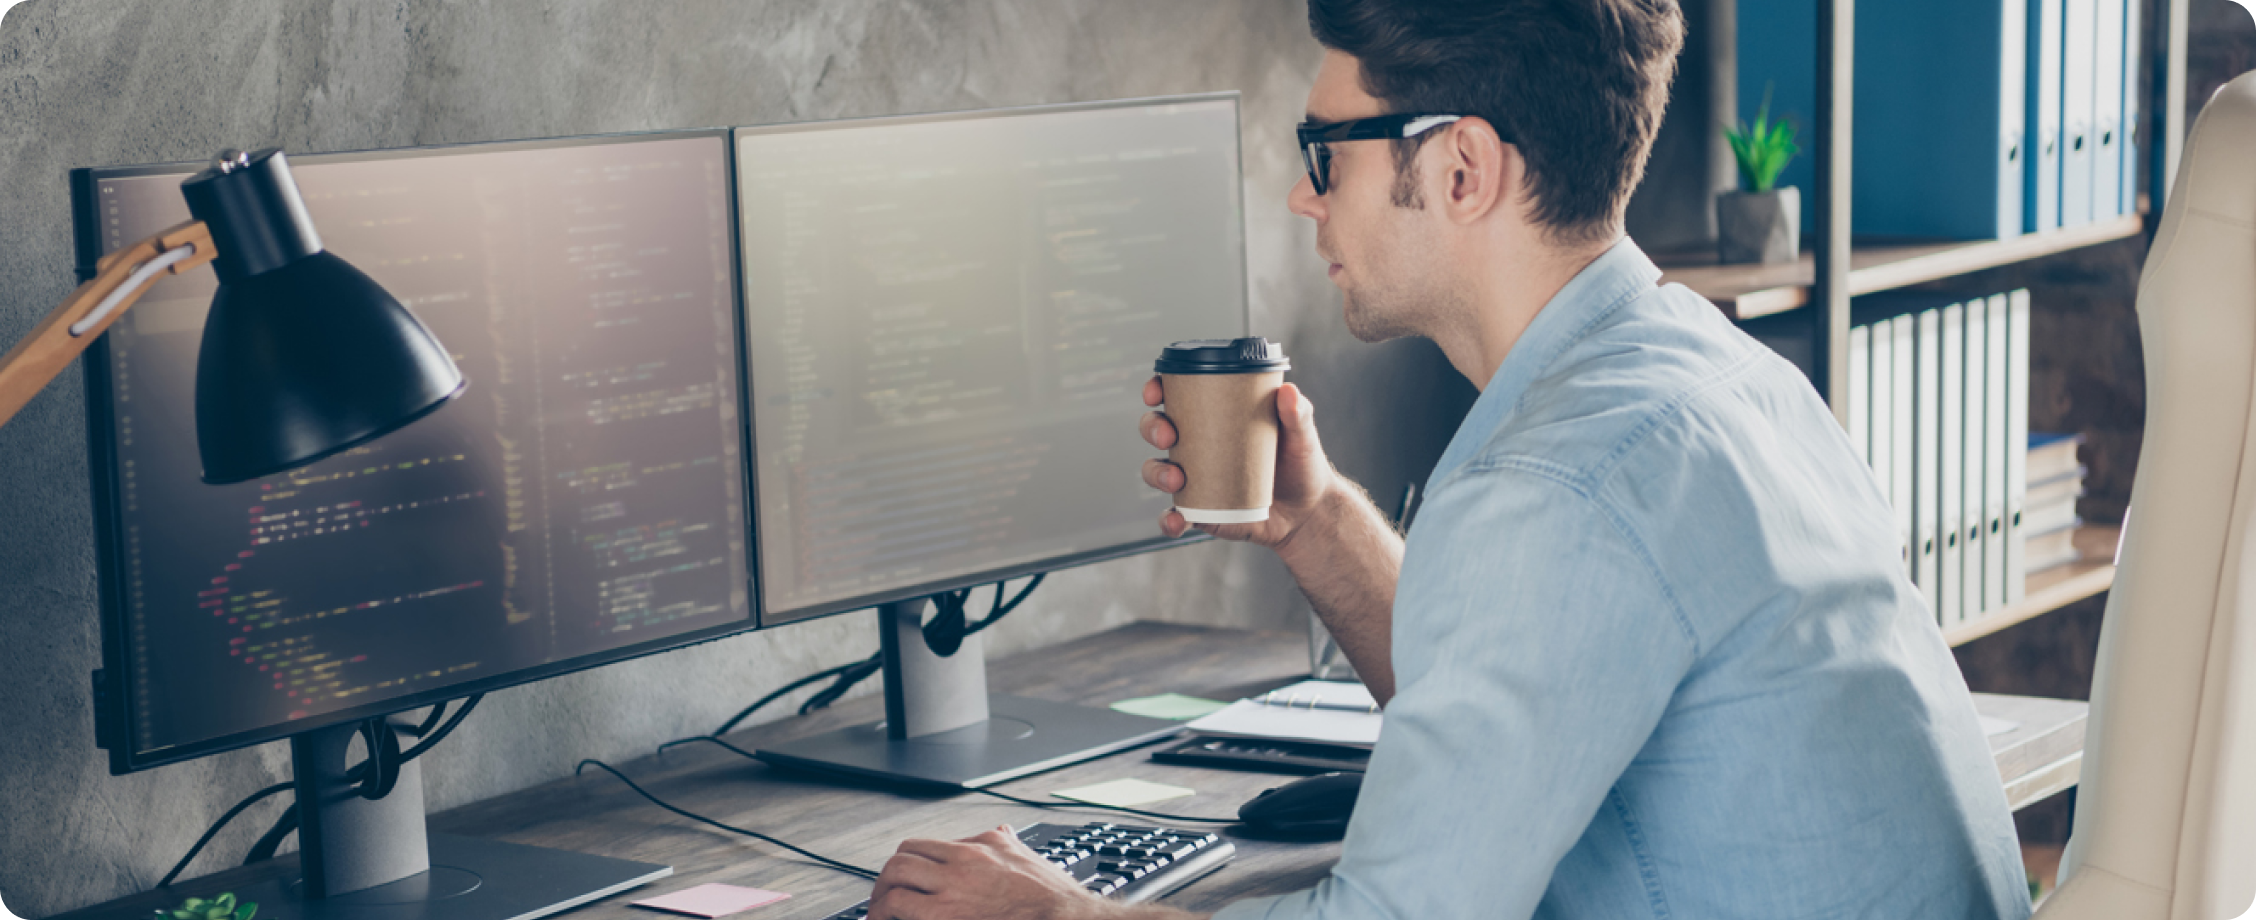 Uomo in camicia azzurra che lavora al computer con una tazza di caffè in mano.